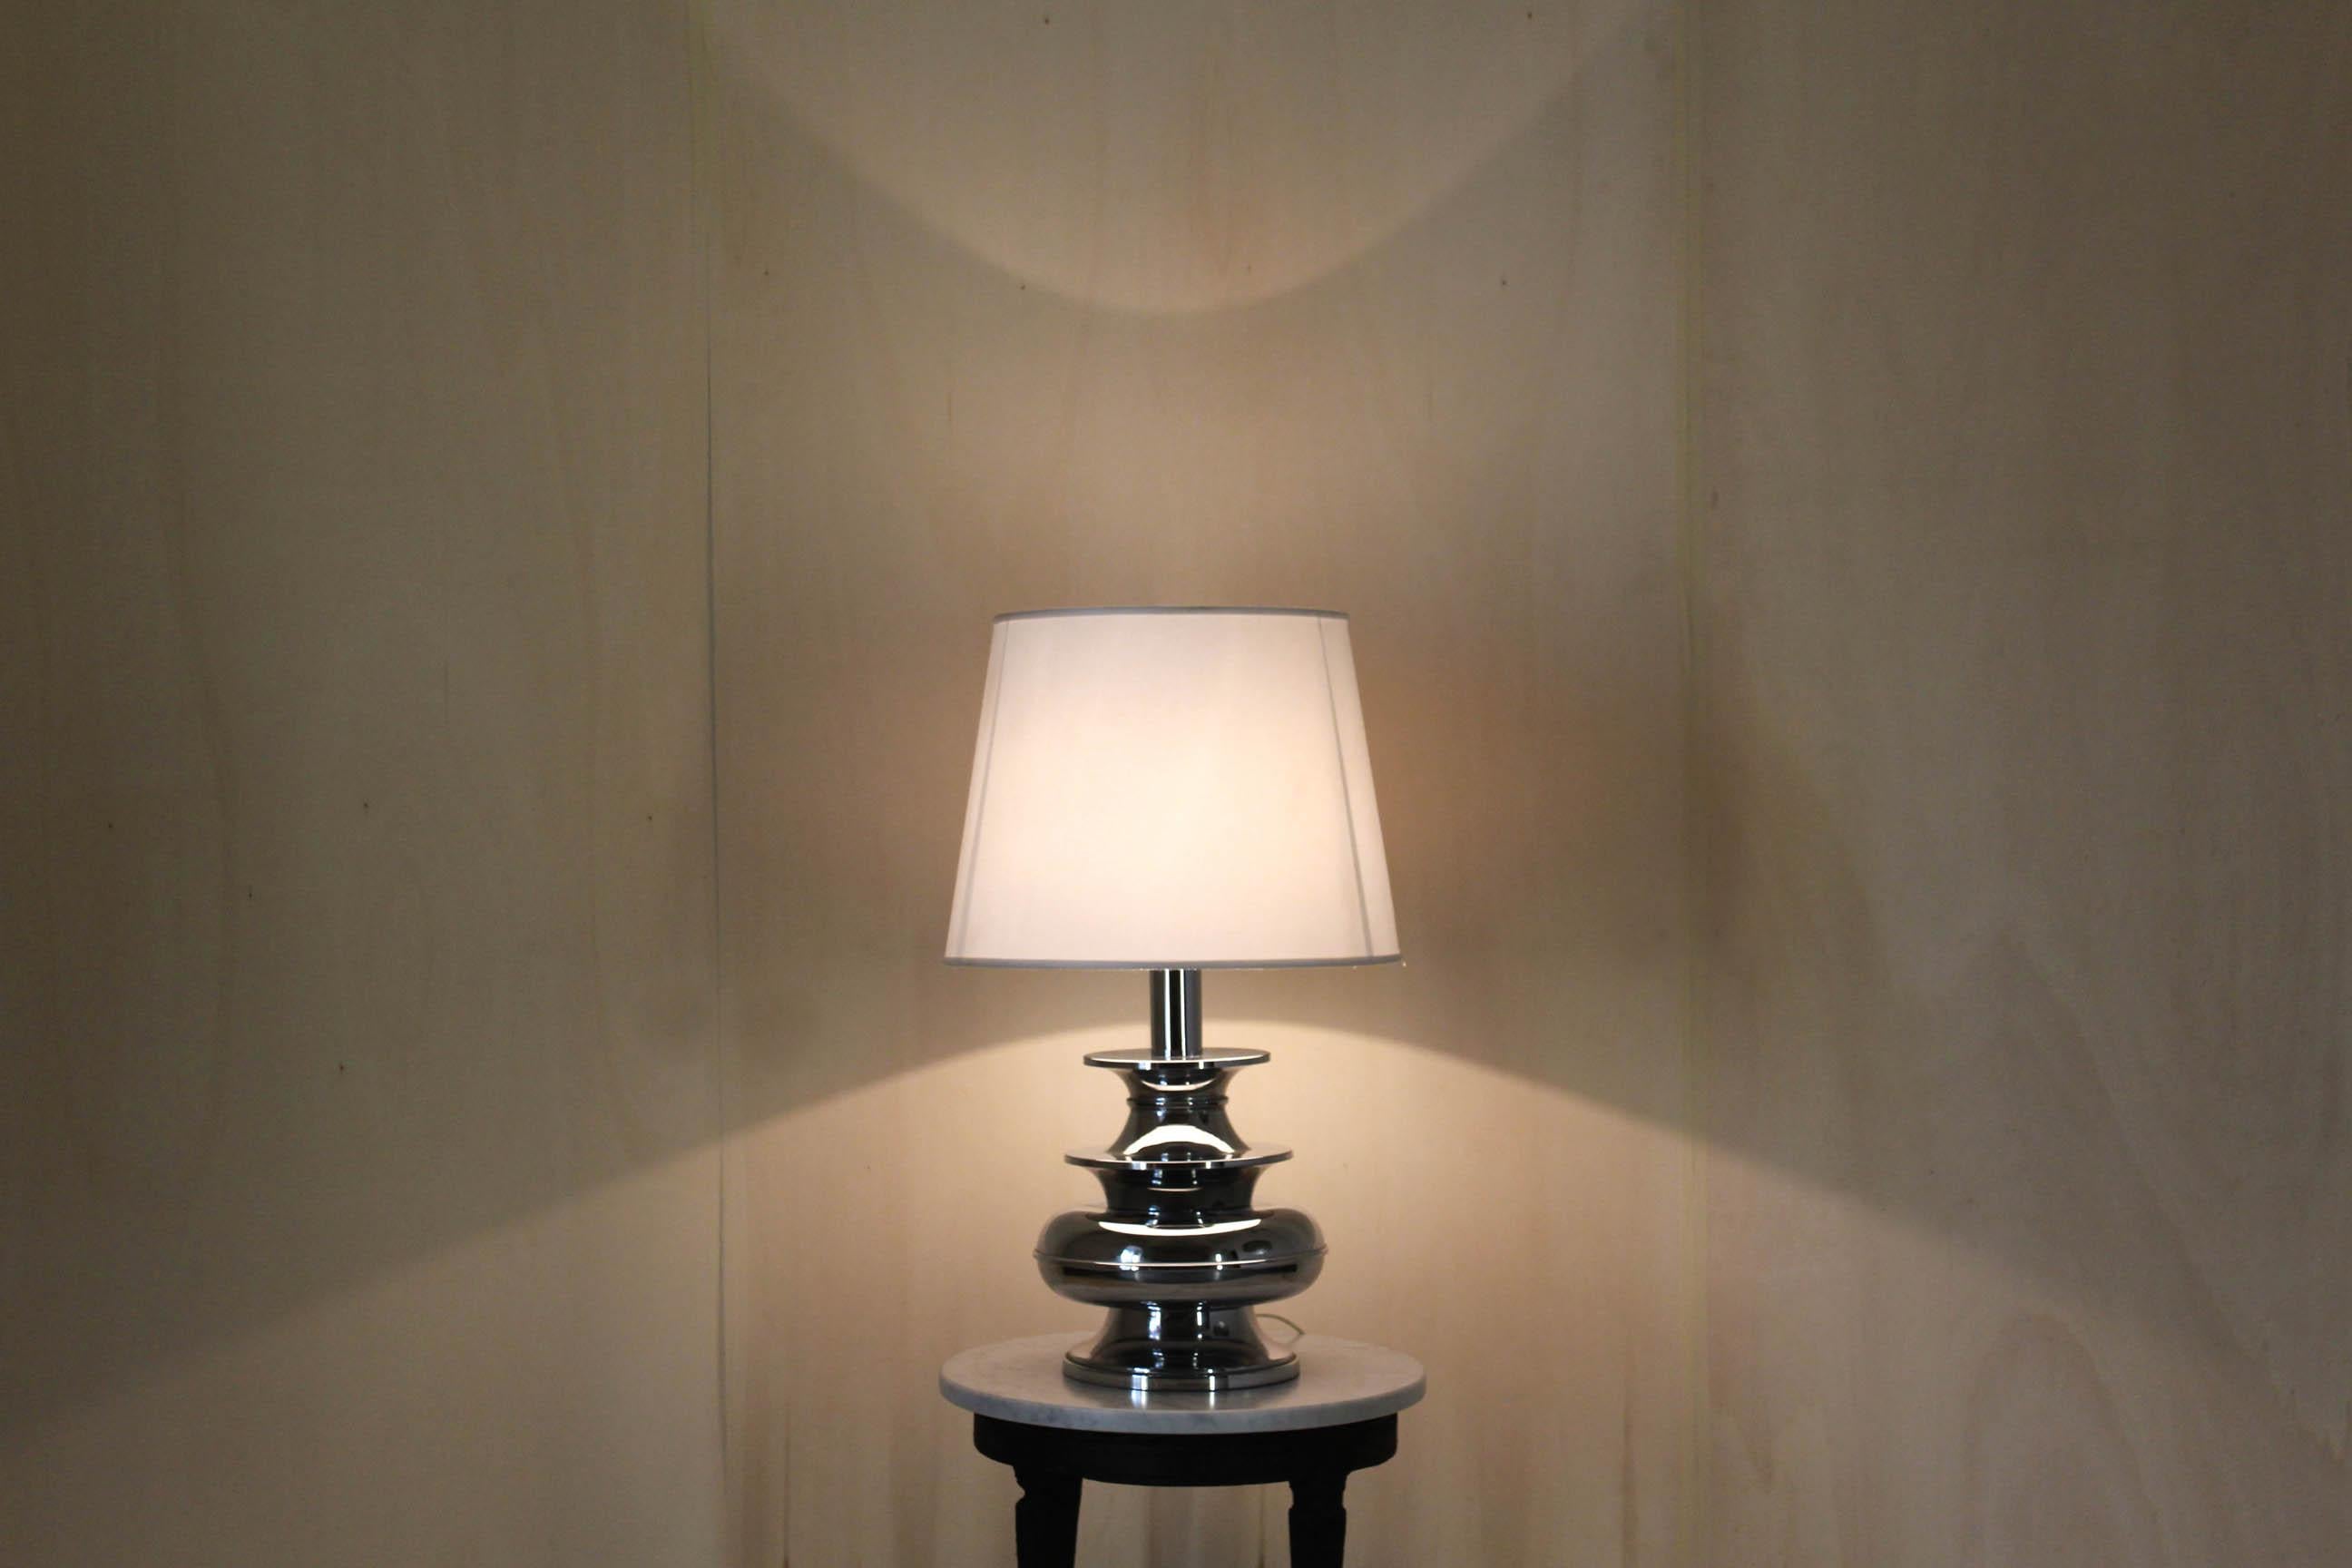 Lampe de table chromée vintage, Reggiani Italie, années 1950.
Une lampe de table chromée Reggiani des années 1950 composée d'un abat-jour en textile et d'une belle structure circulaire. L'article a été révisé dans ses parties électriques et poli